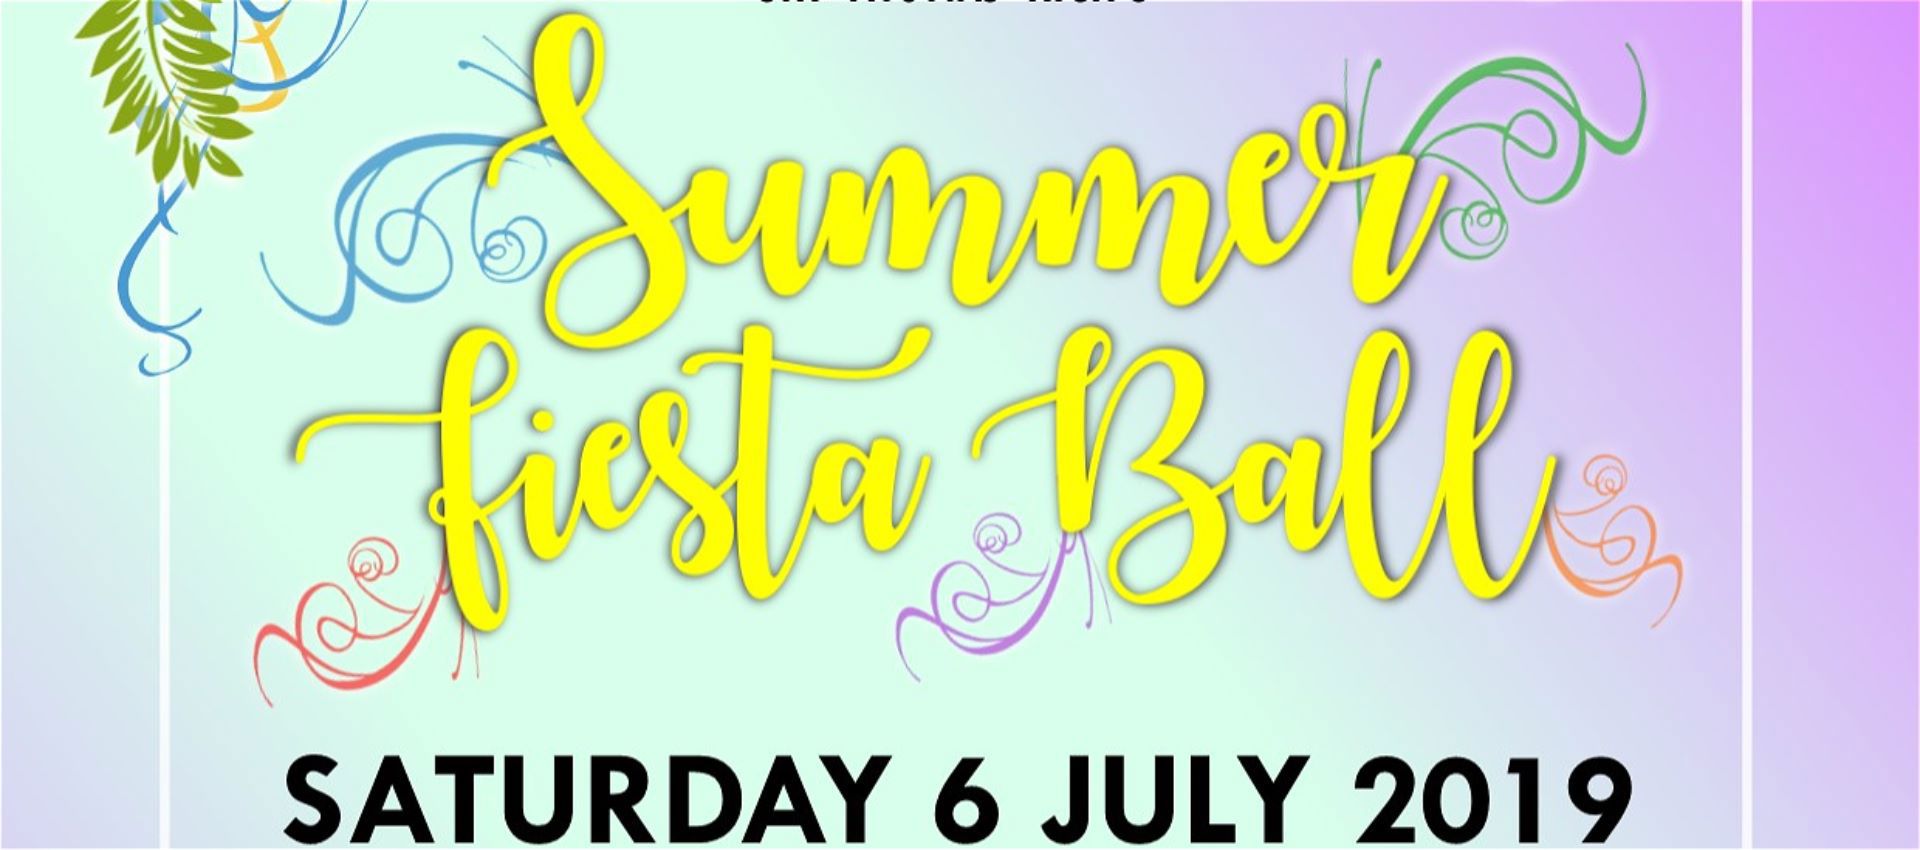 Summer Fiesta Ball